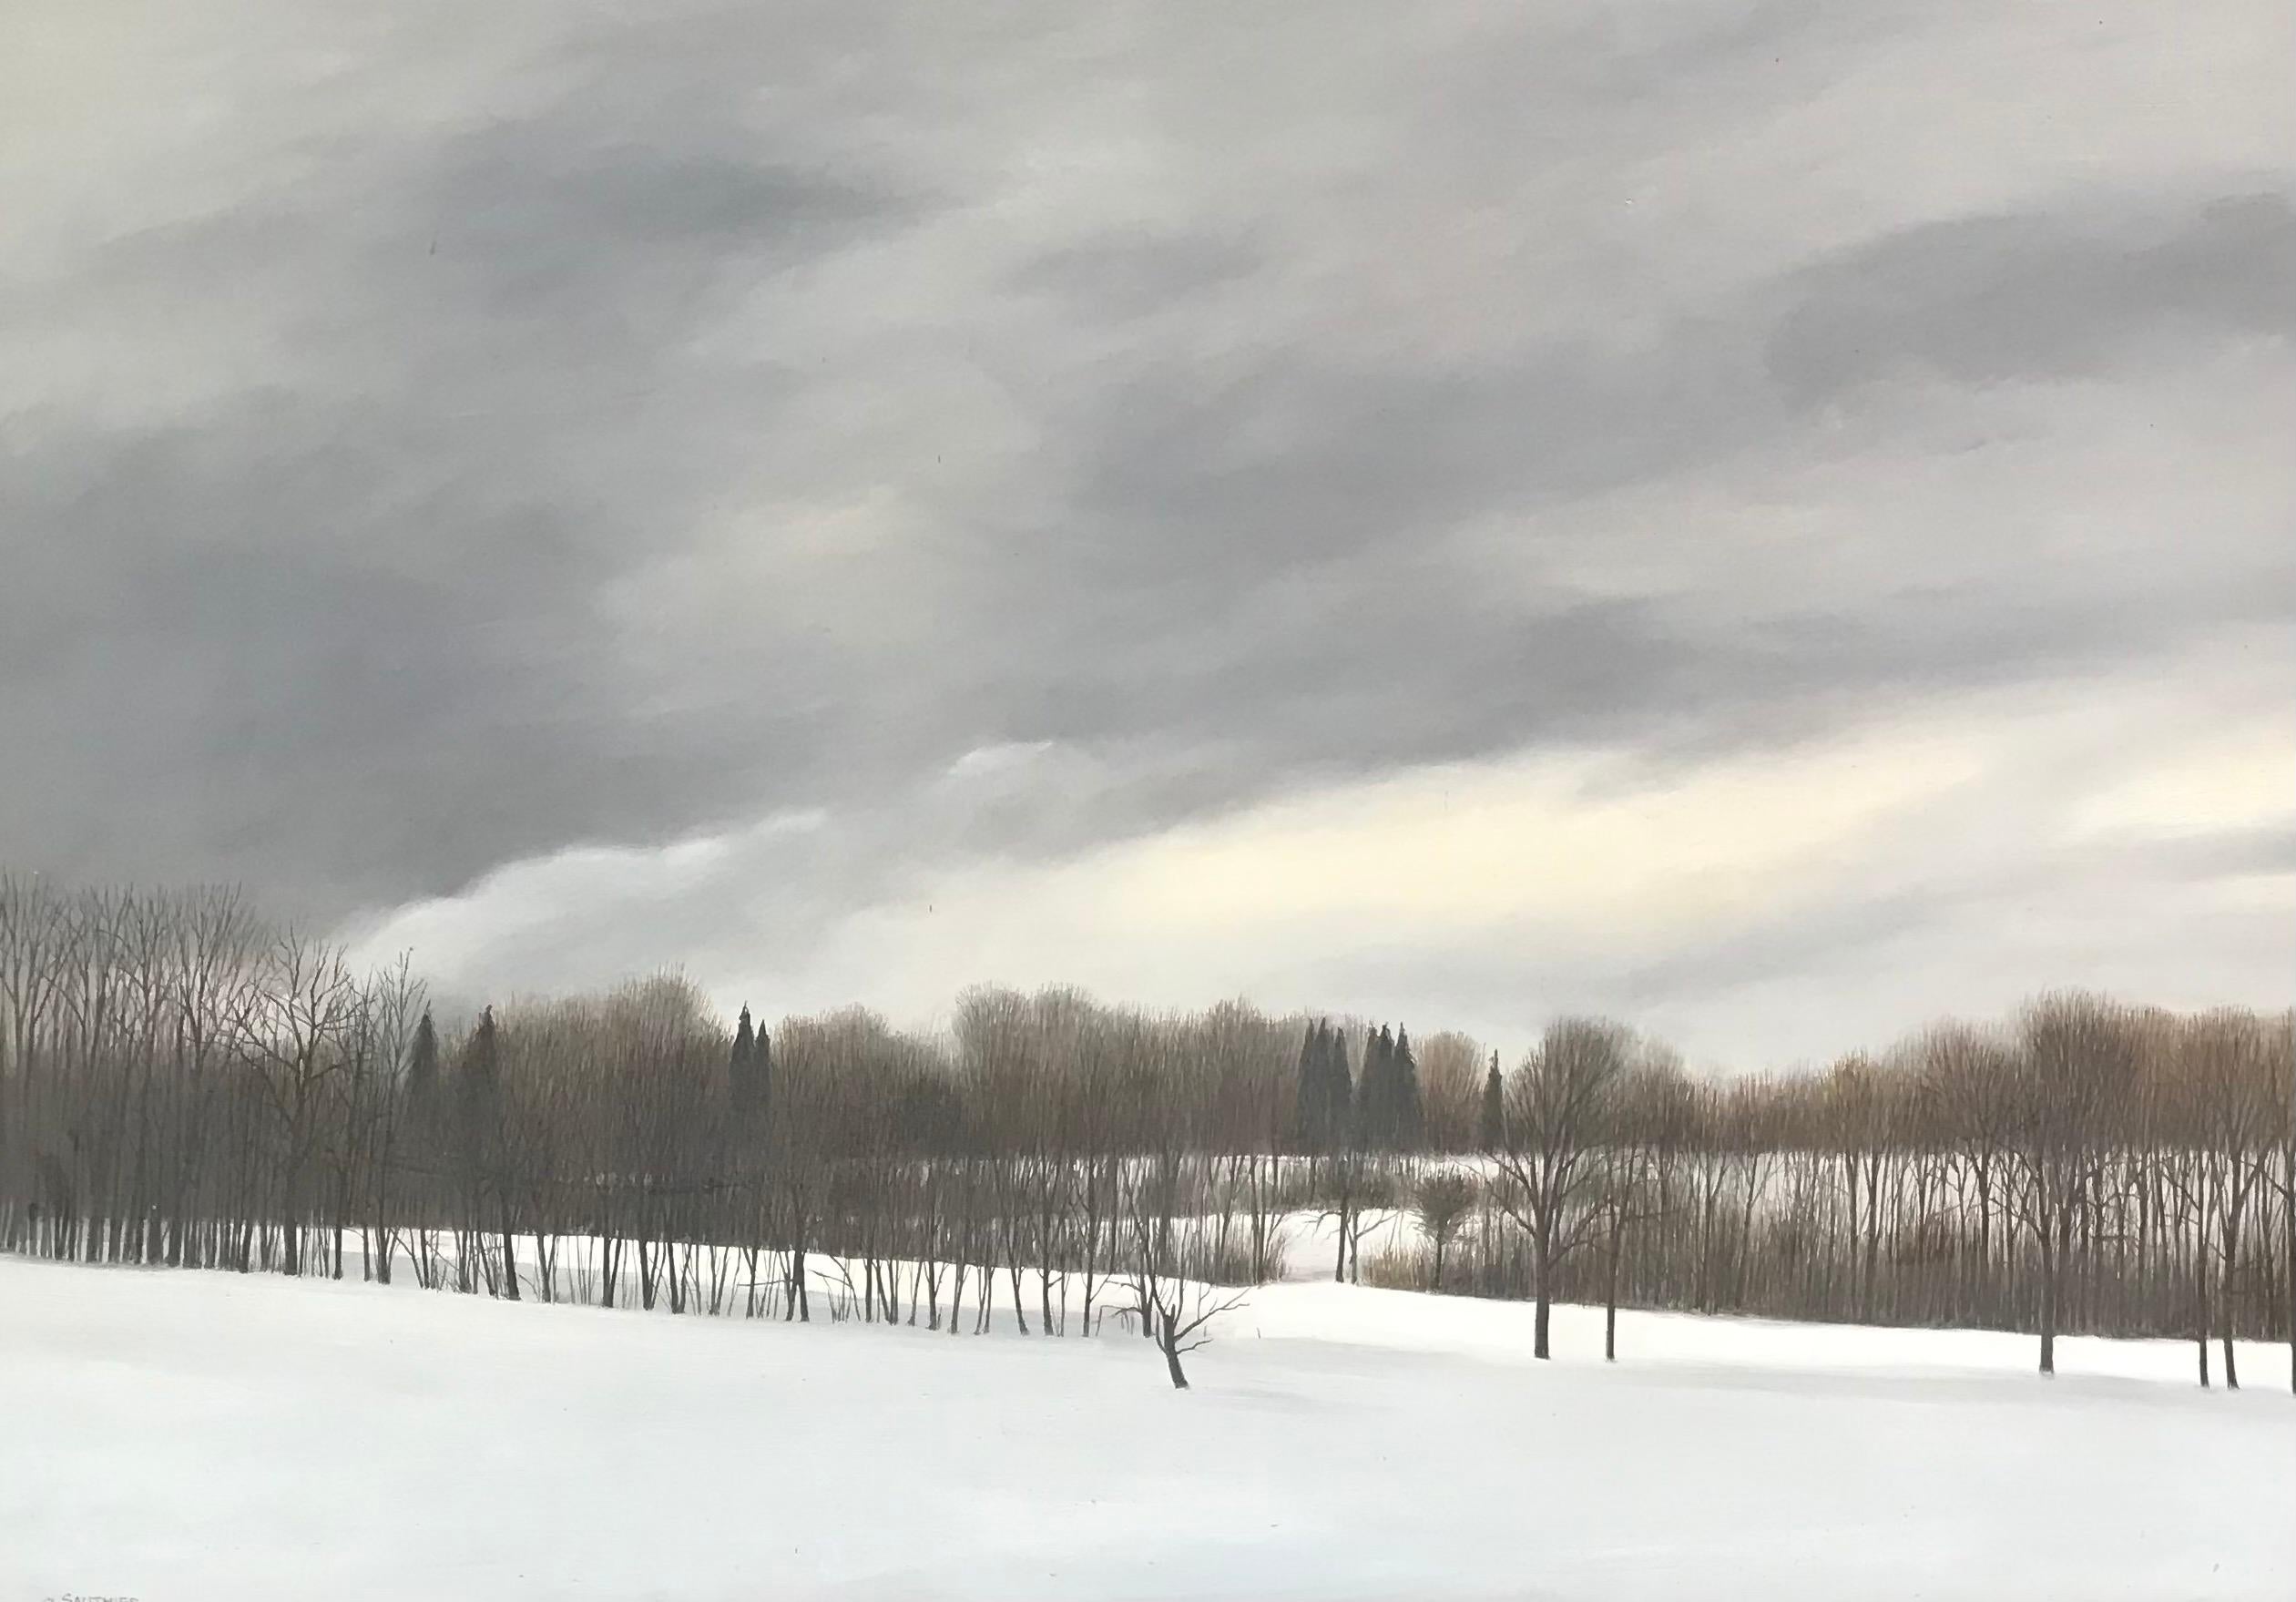 Savoie Landscape by Claude Sauthier - Oil on wood 65x92 cm